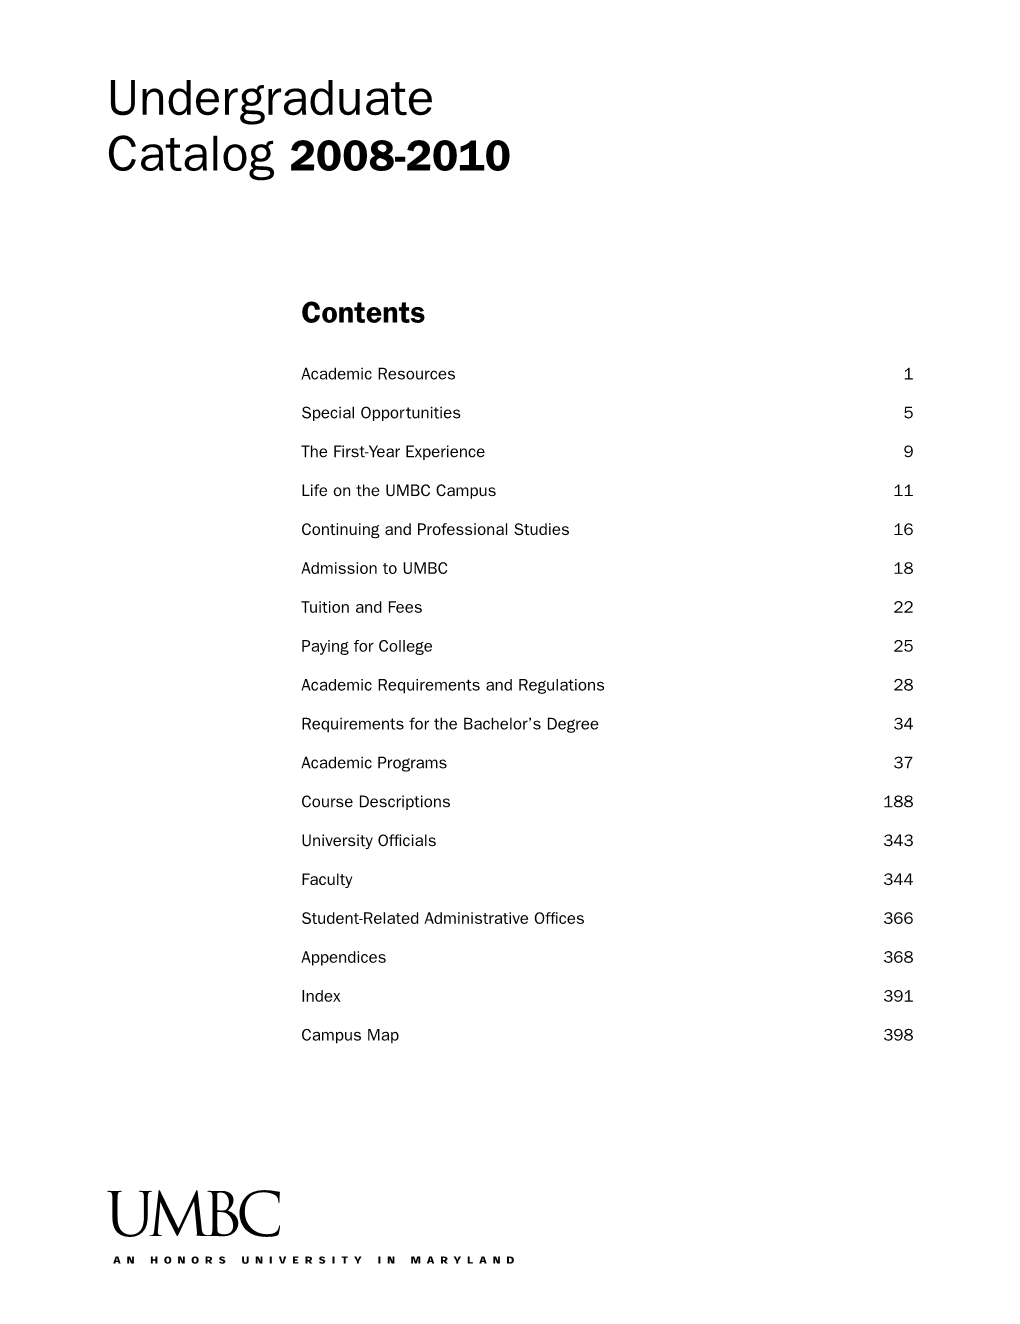 Undergraduate Catalog 2008-2010